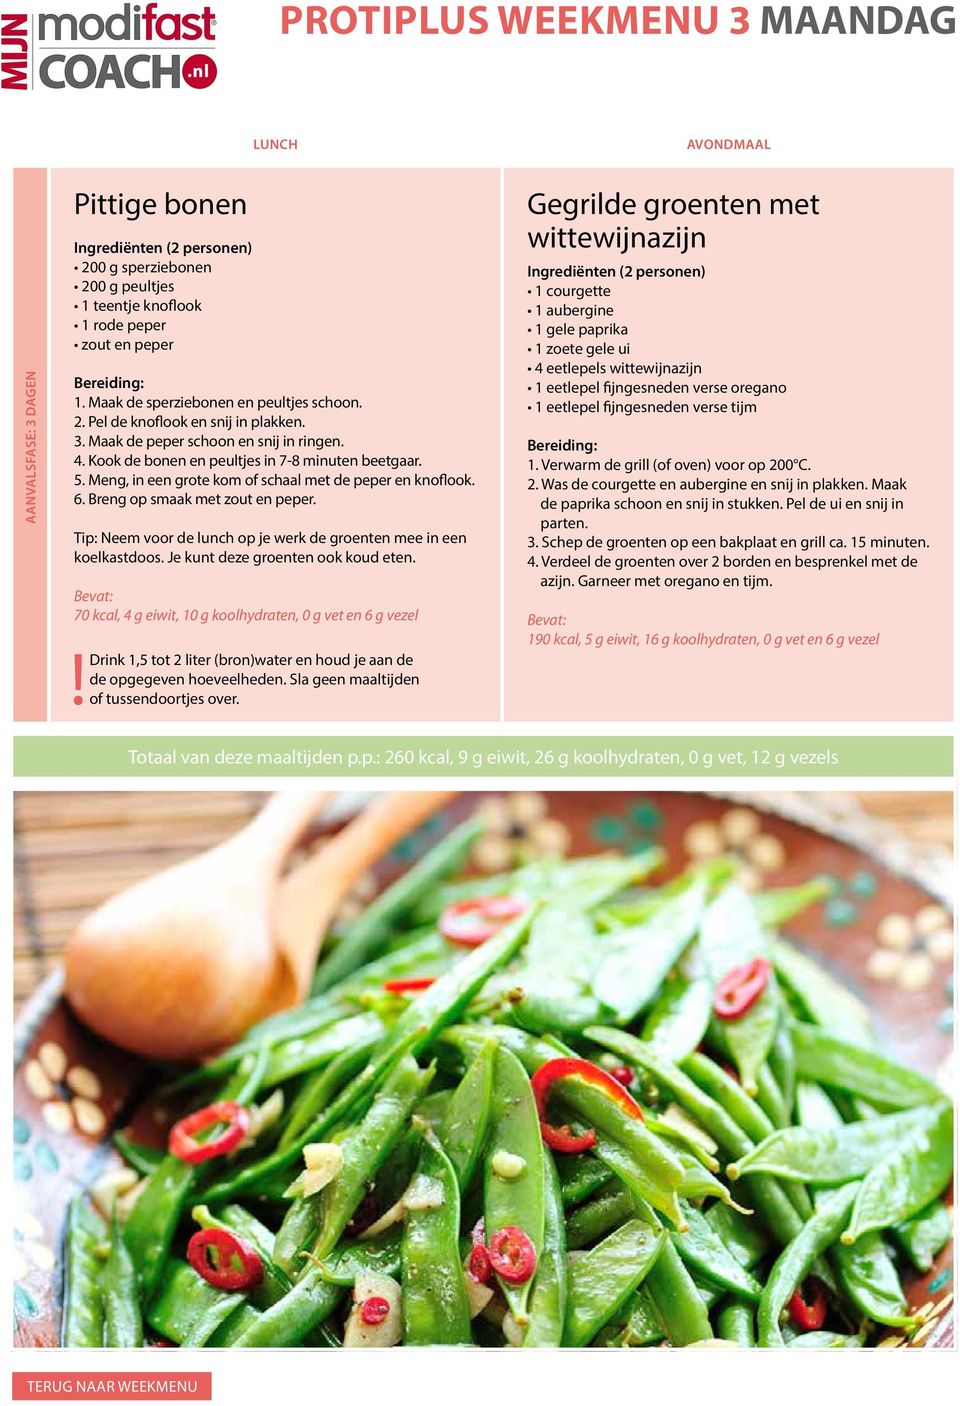 Tip: Neem voor de lunch op je werk de groenten mee in een koelkastdoos. Je kunt deze groenten ook koud eten.